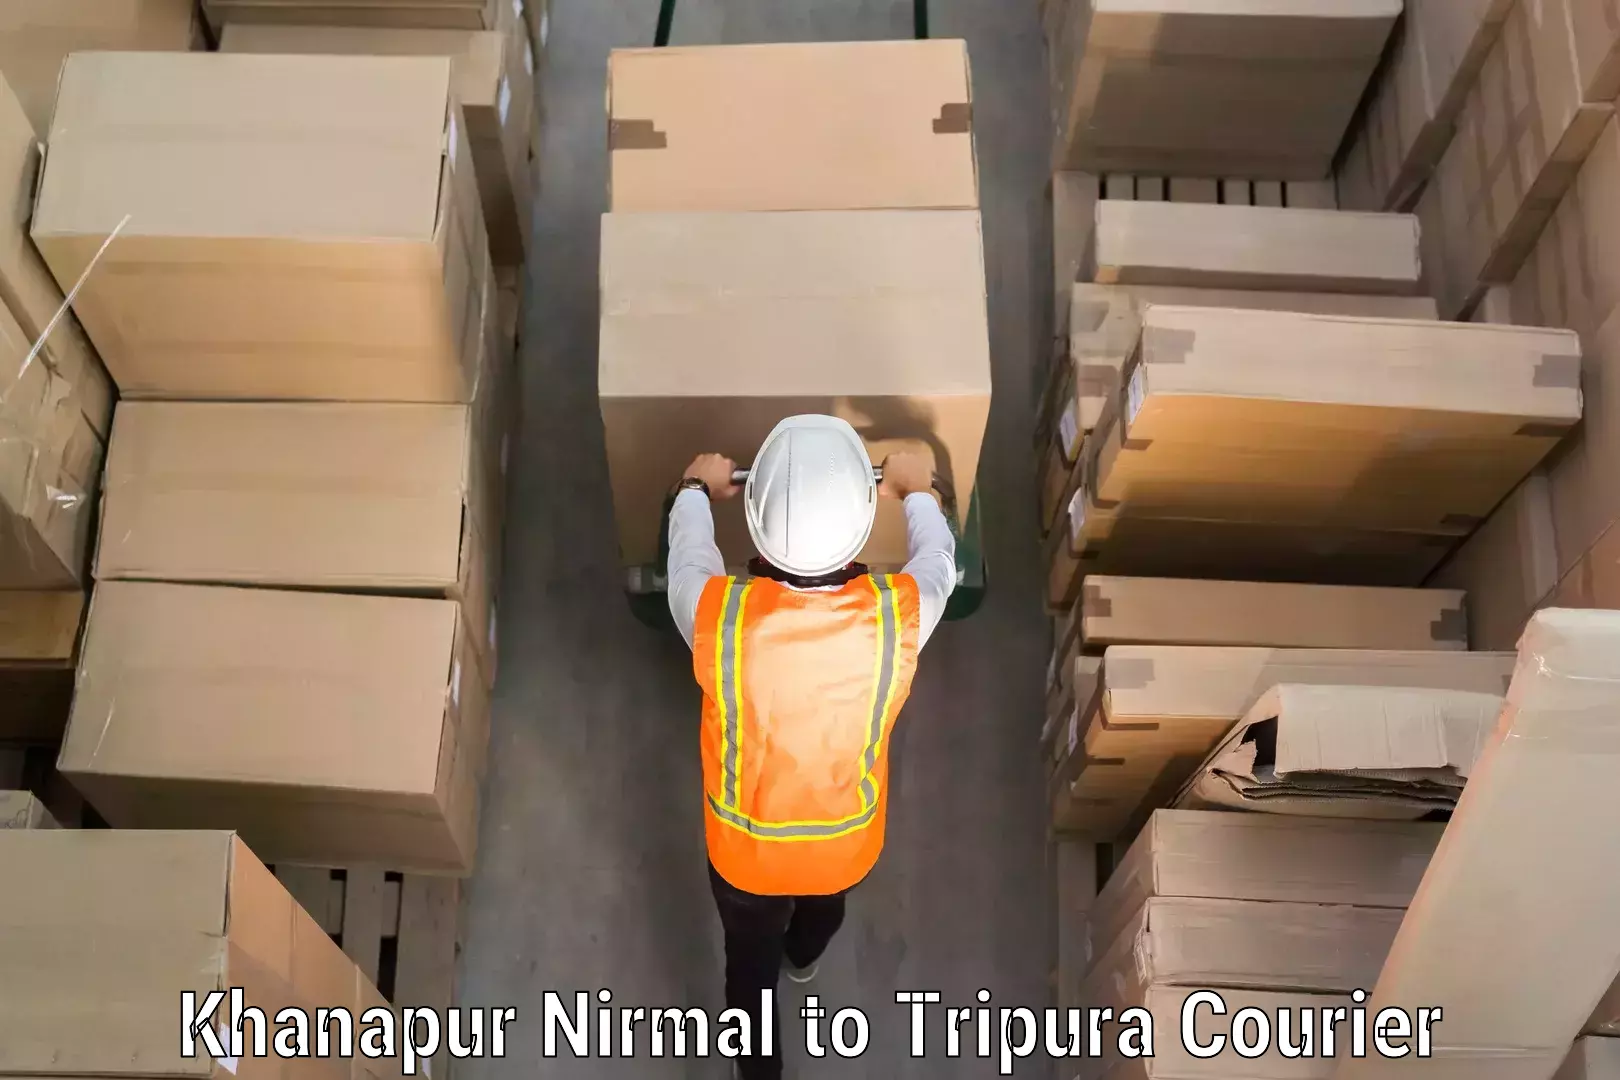 Luggage shipment processing Khanapur Nirmal to Tripura